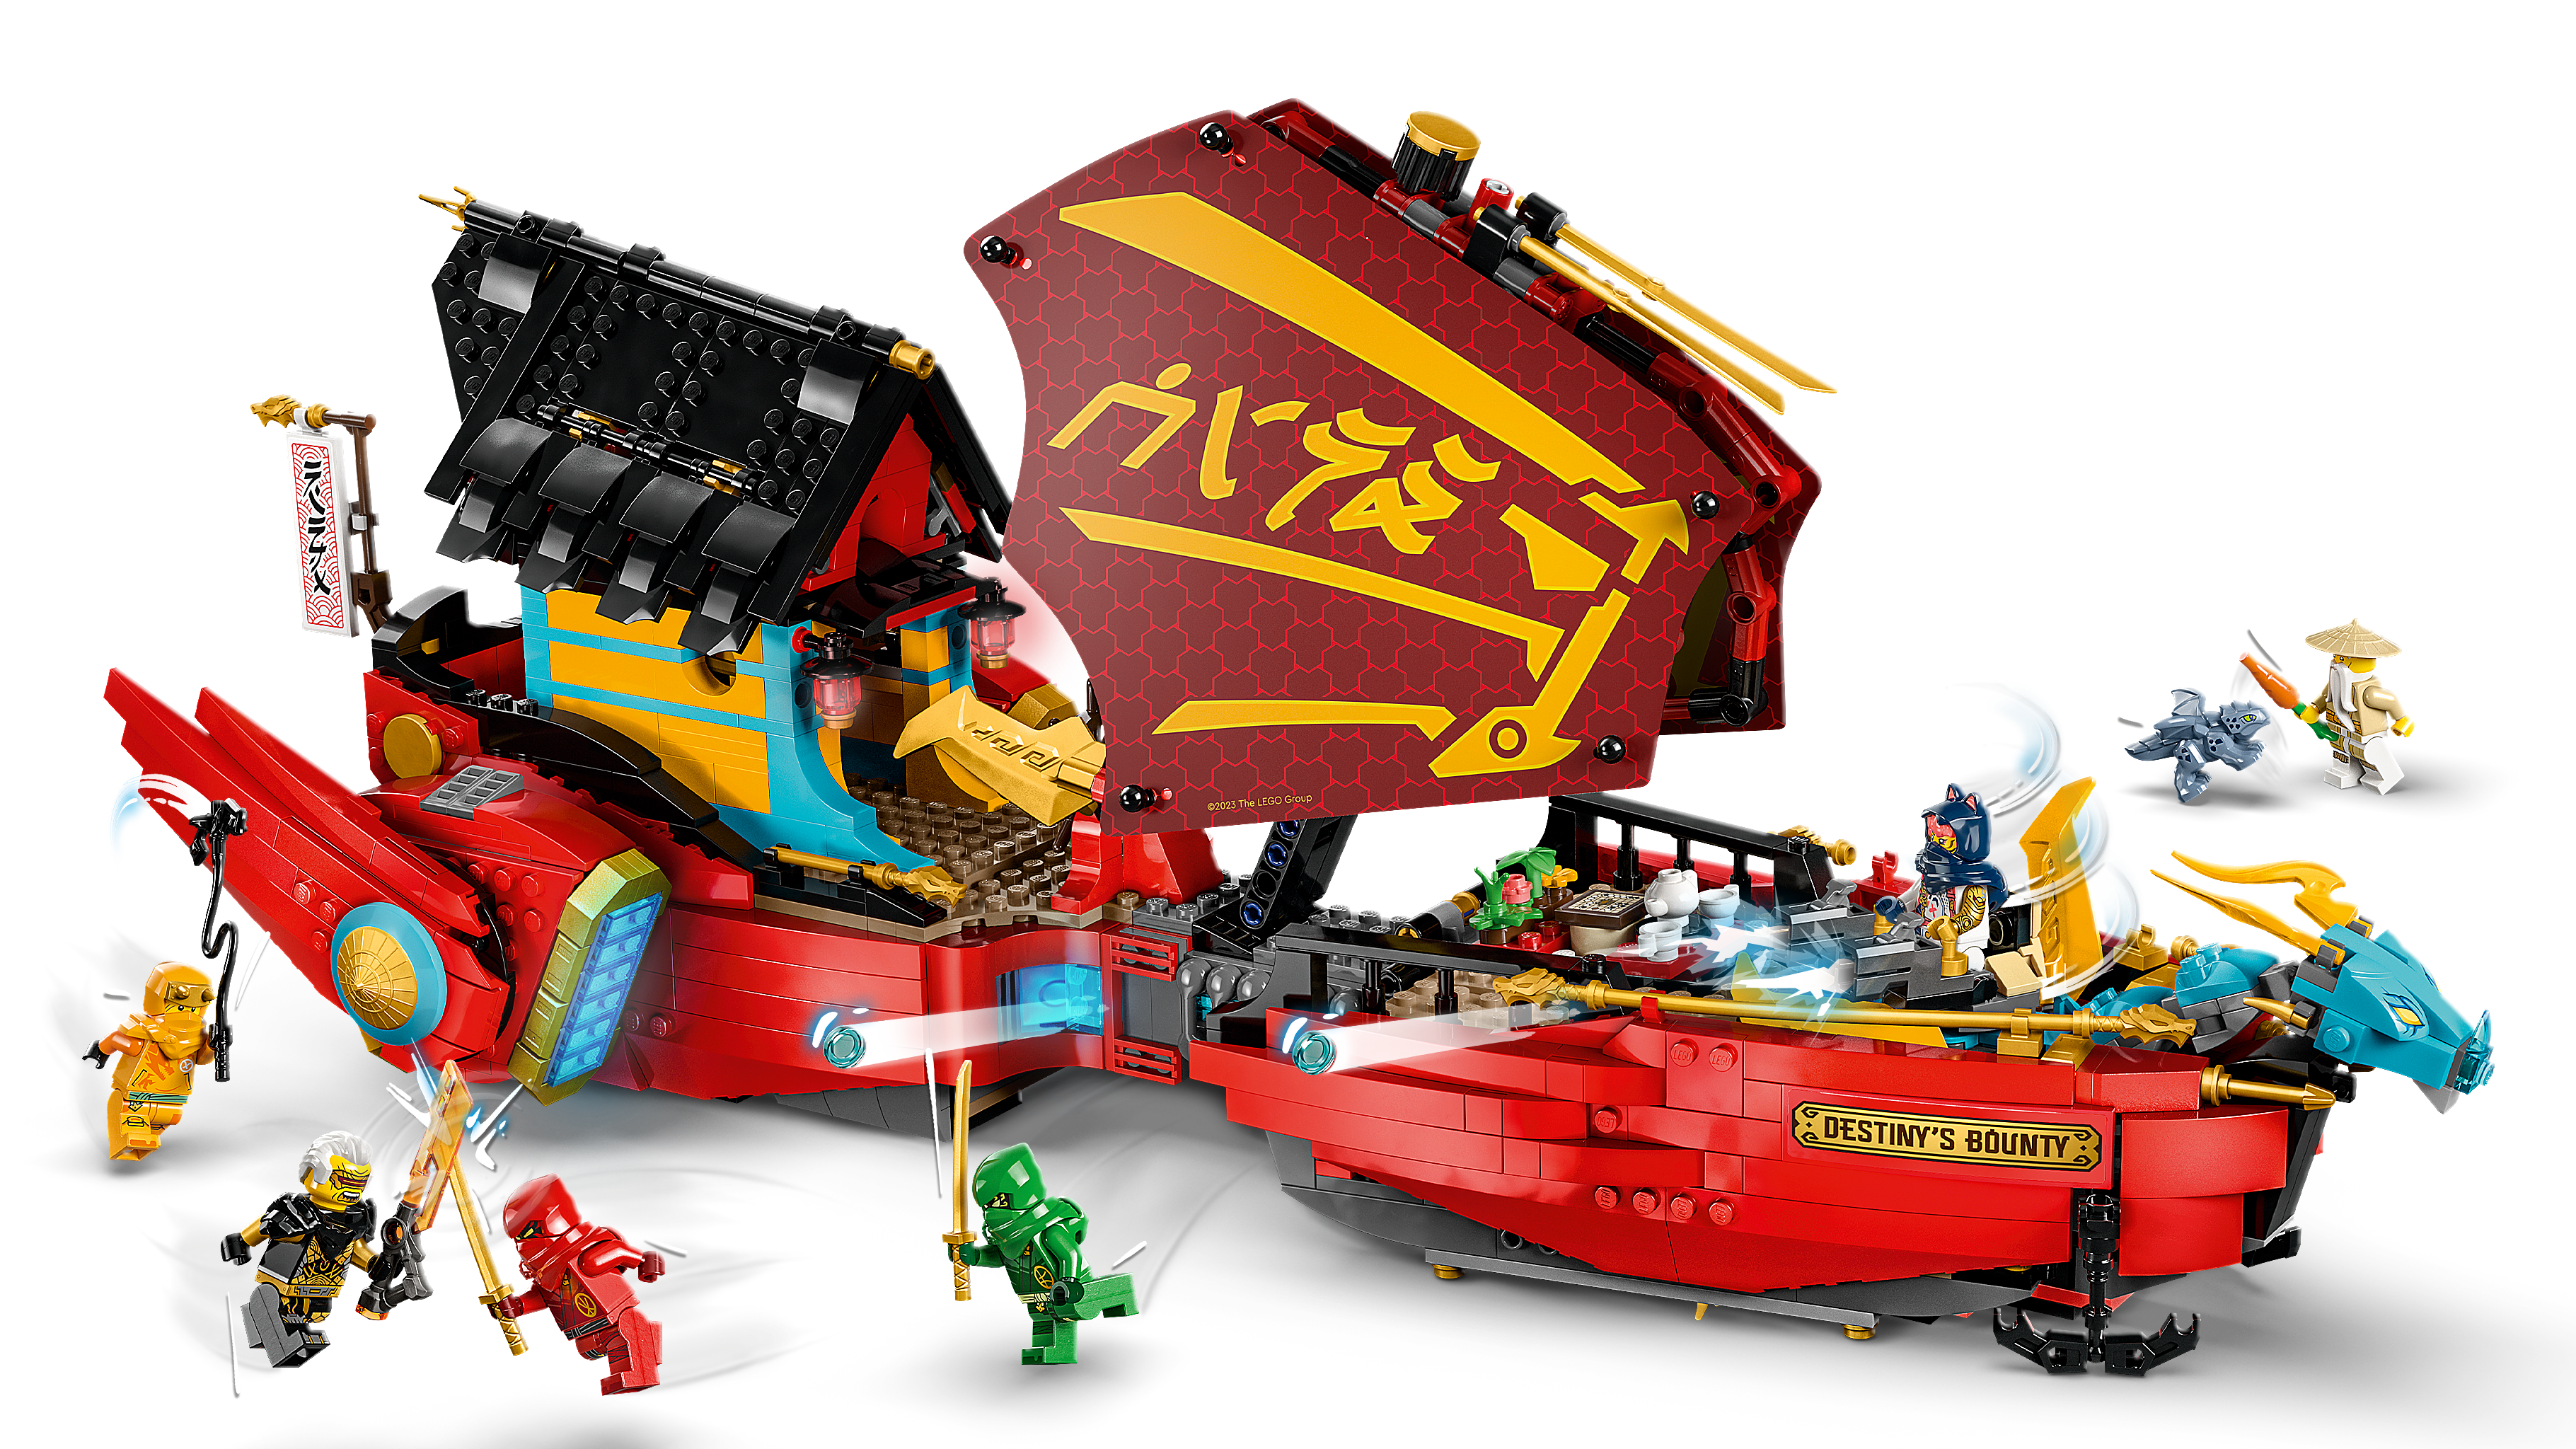 空中戦艦バウンティ号 71797 - レゴ®ニンジャゴー セット - LEGO.comキッズ